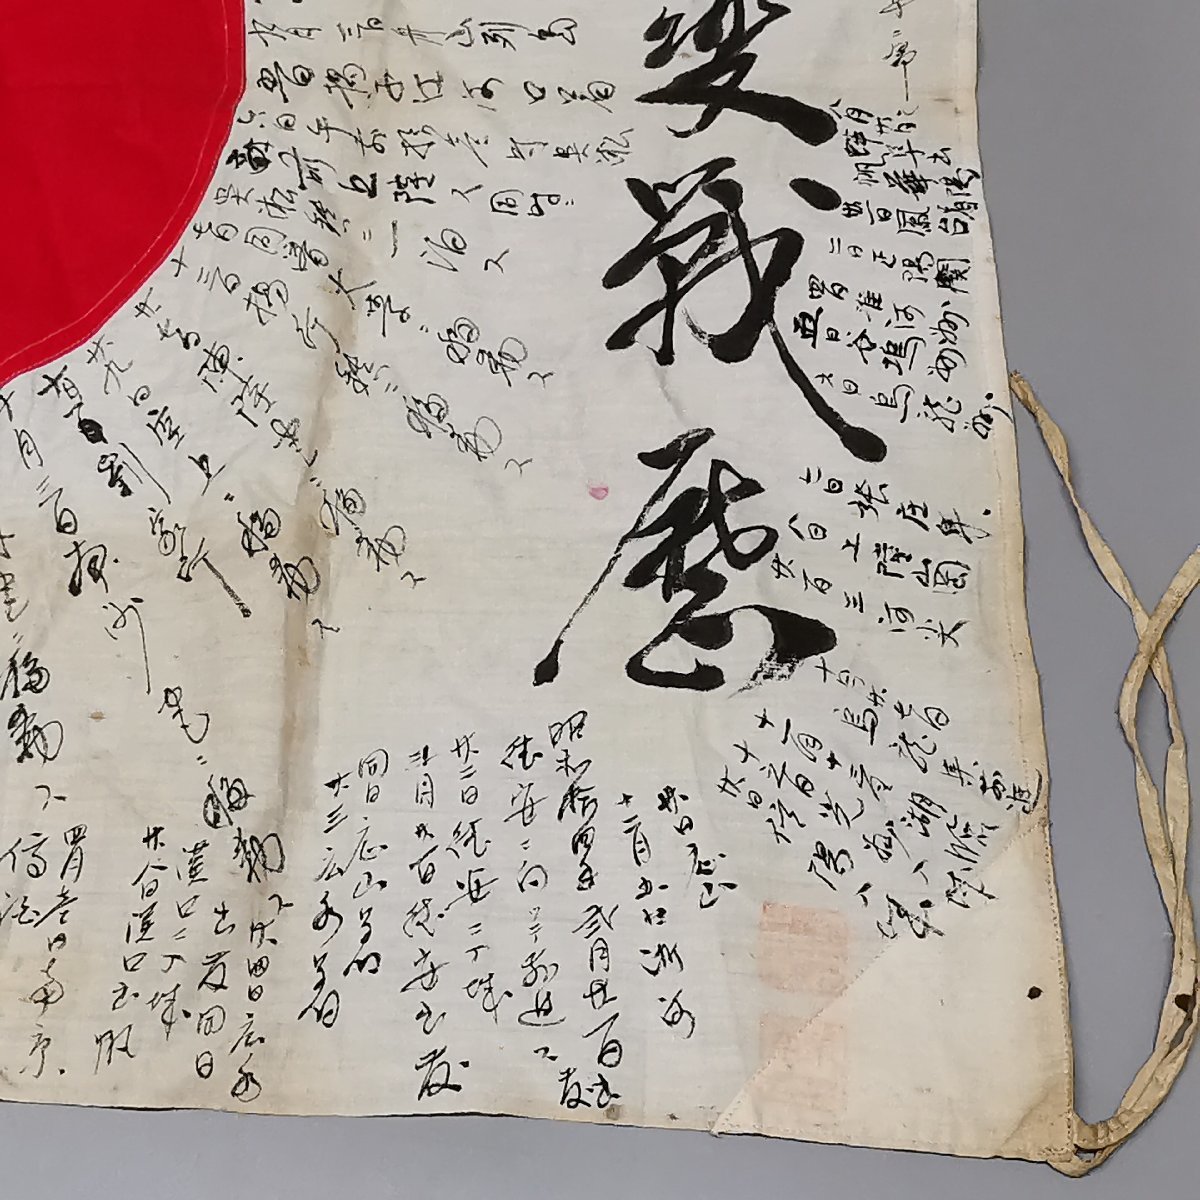 日章旗寄せ書き 日の丸寄書出征旗 日本軍 国旗 戦前 戦時 資料 時代物 